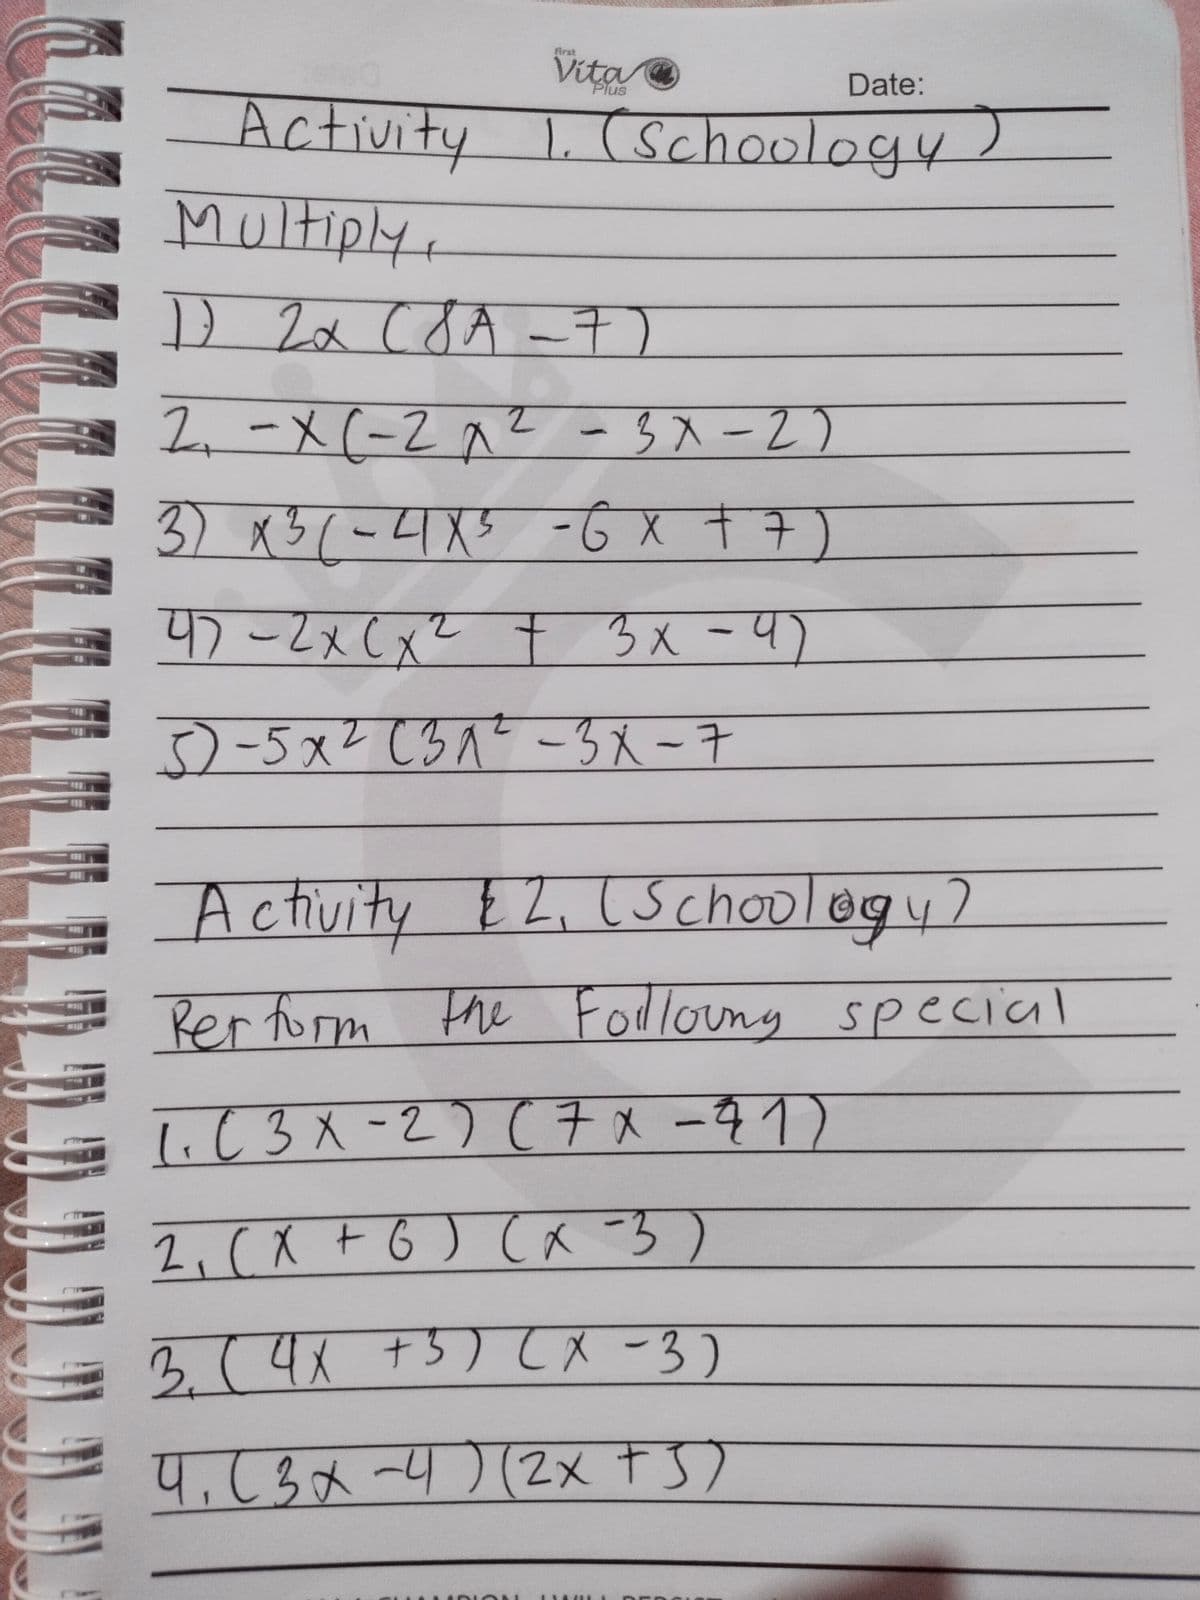 義rat
Vita
Plus
Date:
Activity L (schoology)
Multiply,
1.
D 2x cdA -7)
2.-X(-2^2
-3入-2)
3) x3(-4X5 -Ġ X +7)
4)-2x(x² t
3x-4)
3)-5x? (3^? -3 X -7
Activi
ty EZ, (Schoology?
Rer form the Fodlouny special
1.C3メ-2) (チxータ1)
2,(X + 6) (a -3)
3.(4
+5) てメ-3)
4,63x-4)(2x t S)
LLL
